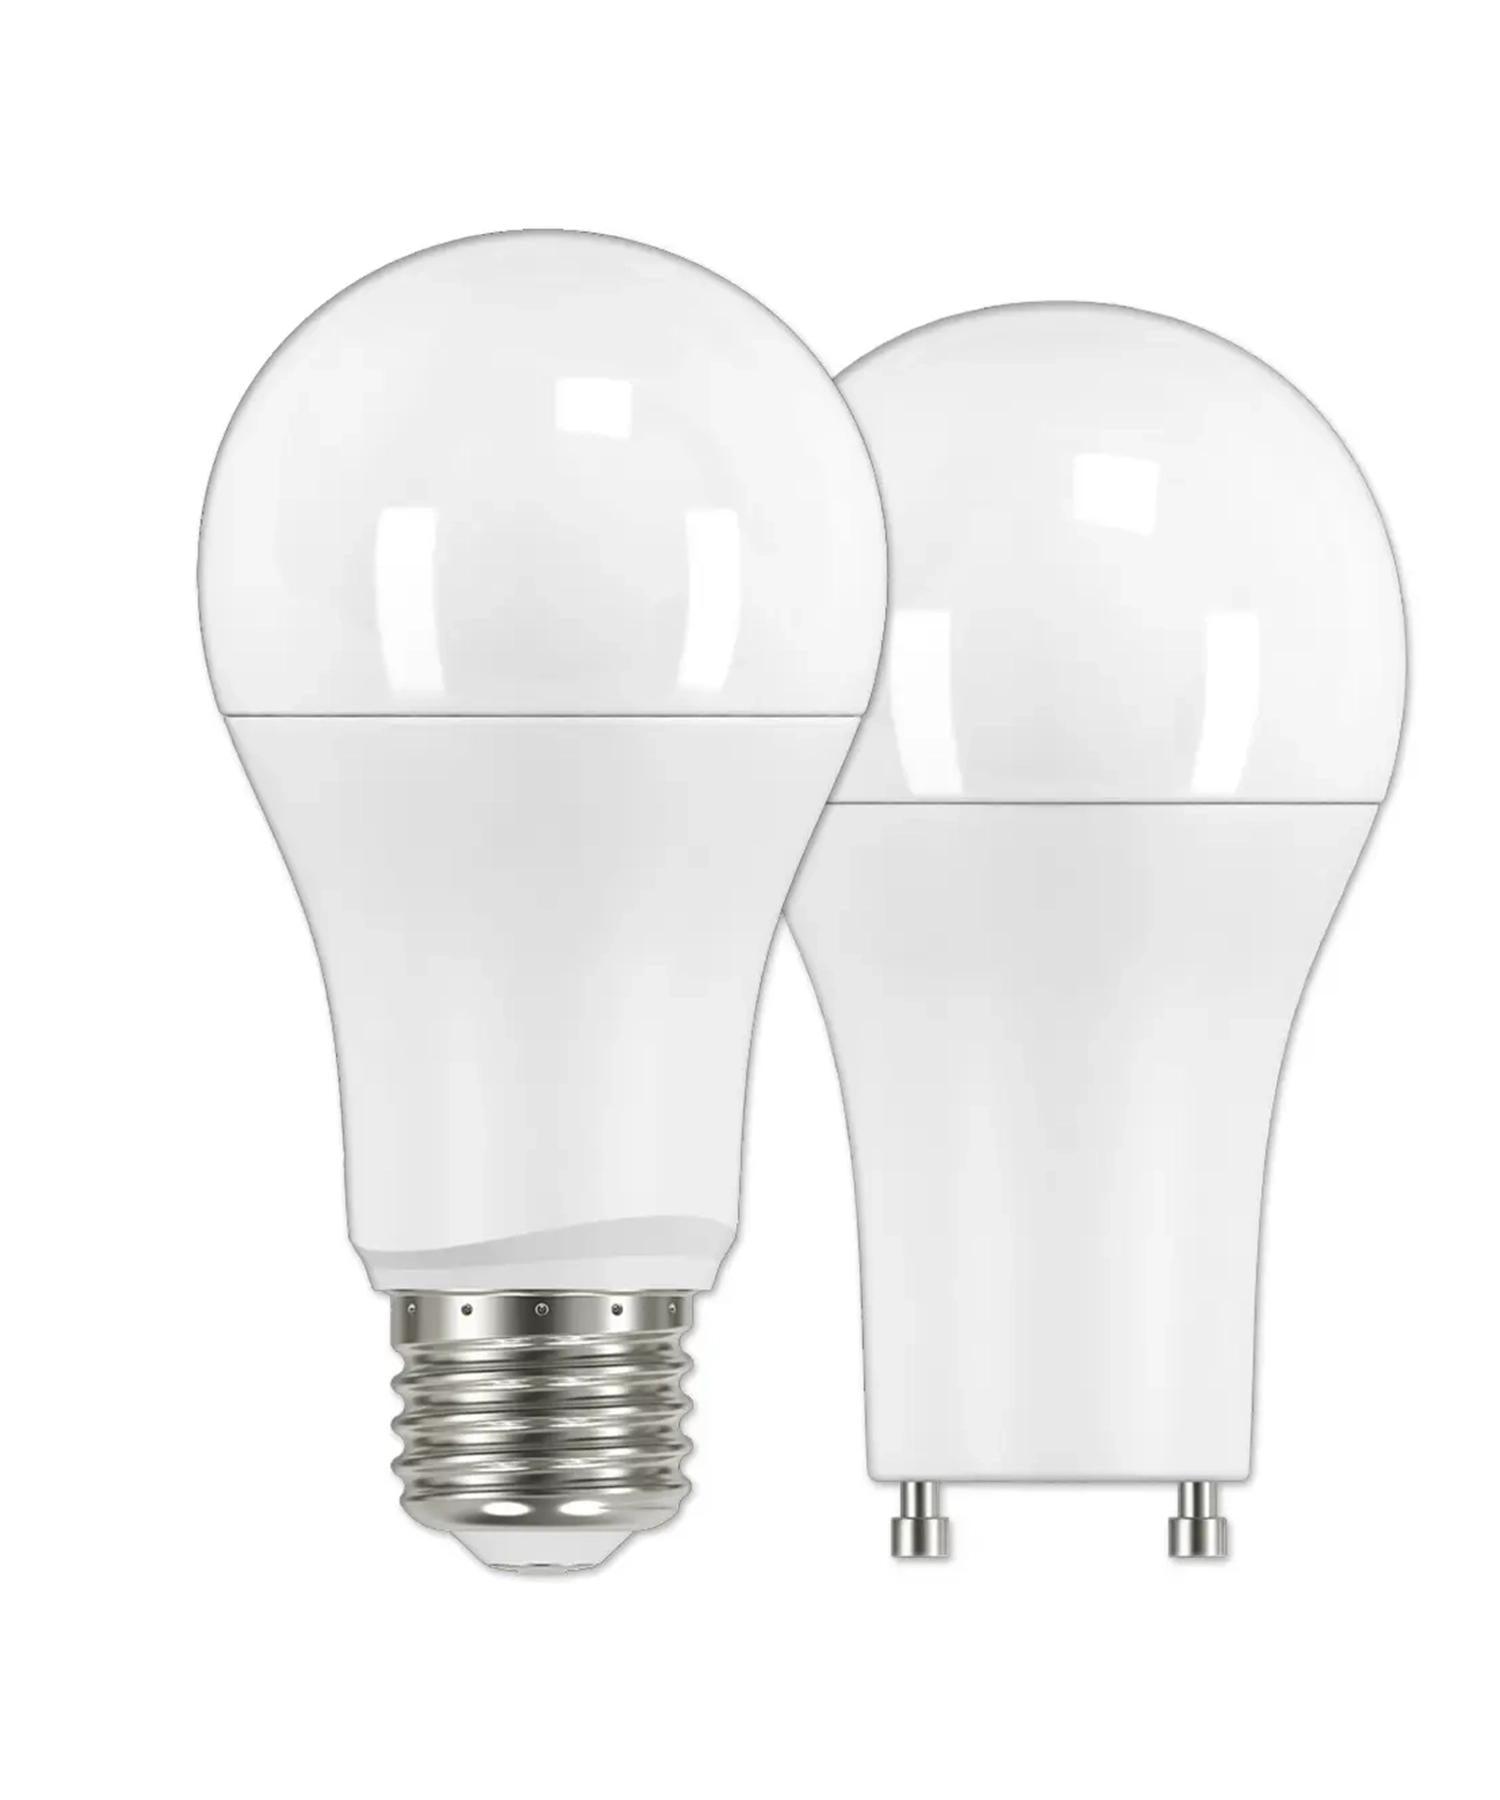 Standard LED Light Bulbs - Bees Lighting